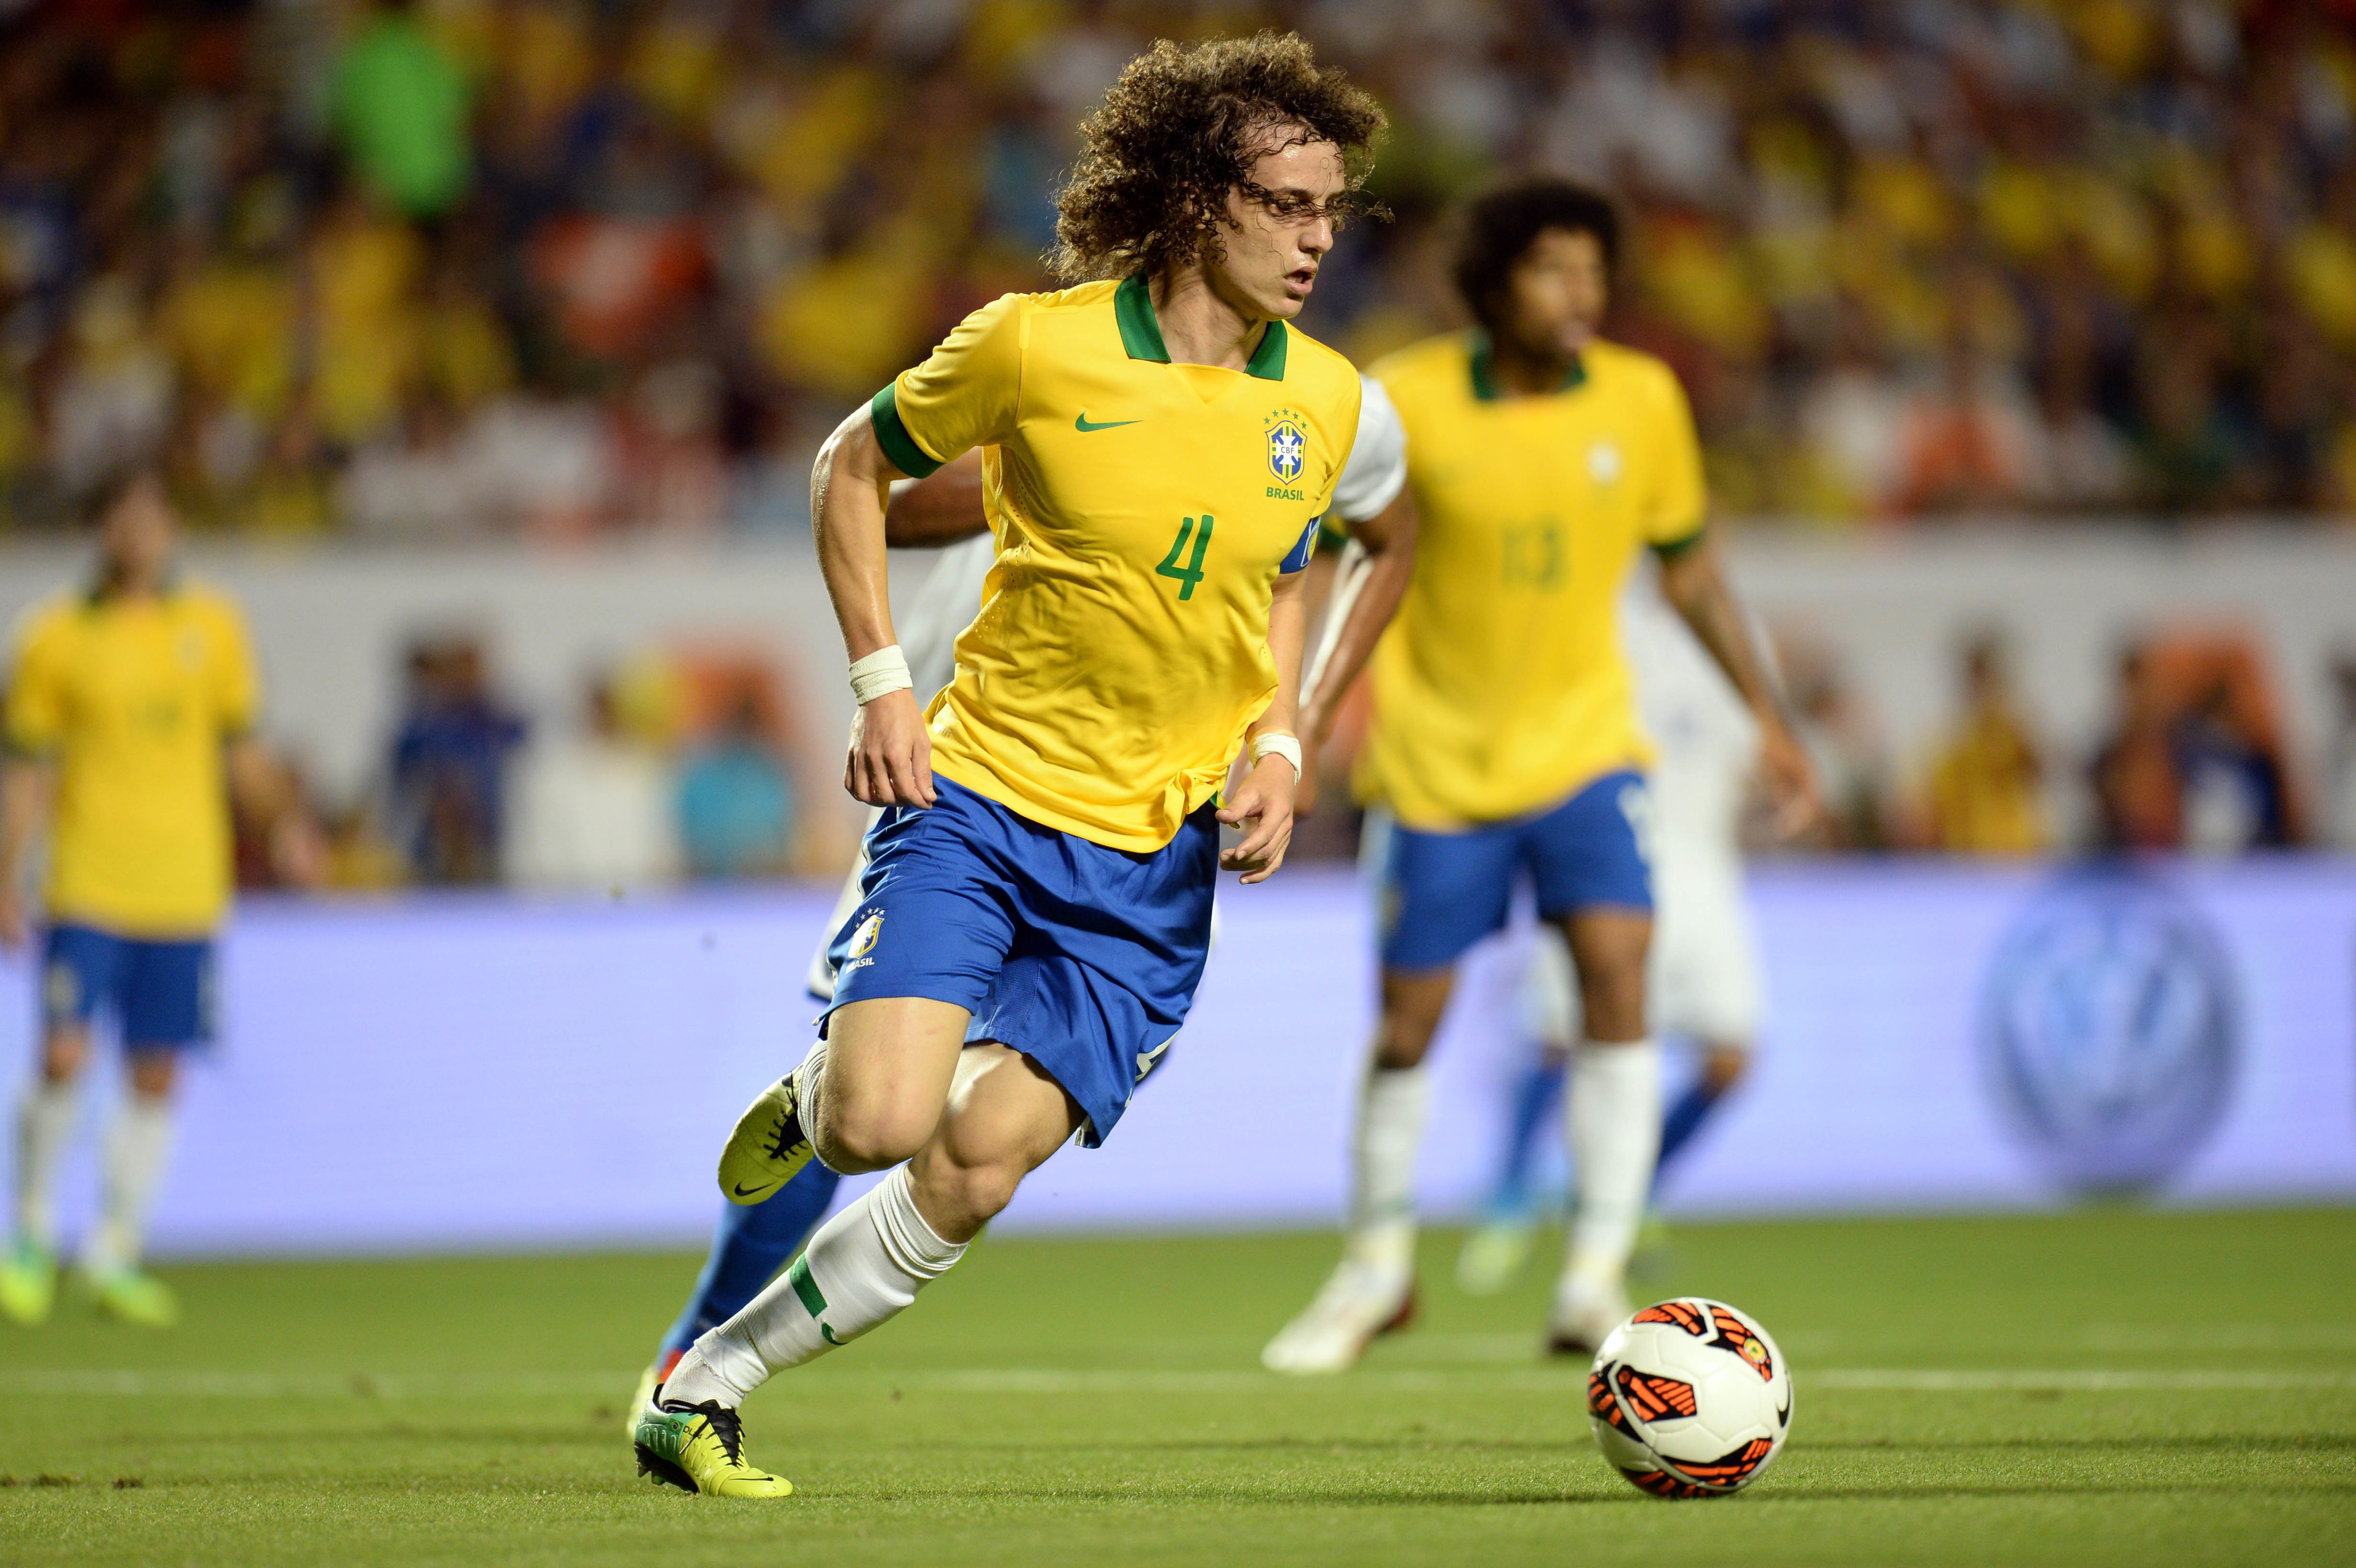 David Luiz Brazil Defender Soccer 4928x3280